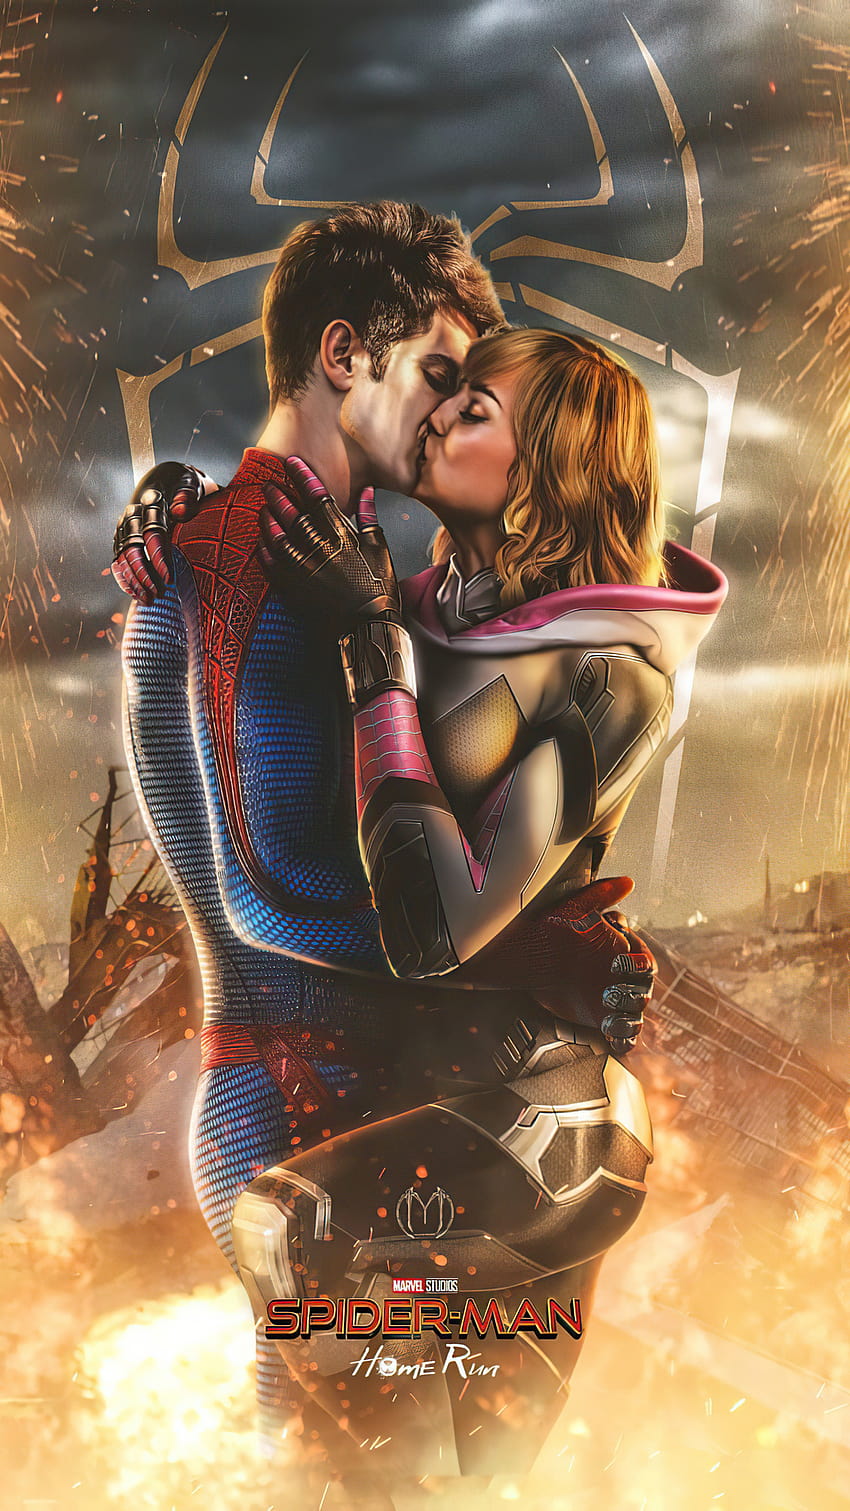 1080x1920 Spiderman et Gwen Stacy s'embrassent Iphone 7,6s,6 Plus, Pixel xl, One Plus 3,3t,5, Arrière-plans et, spider man gwen stacy Fond d'écran de téléphone HD